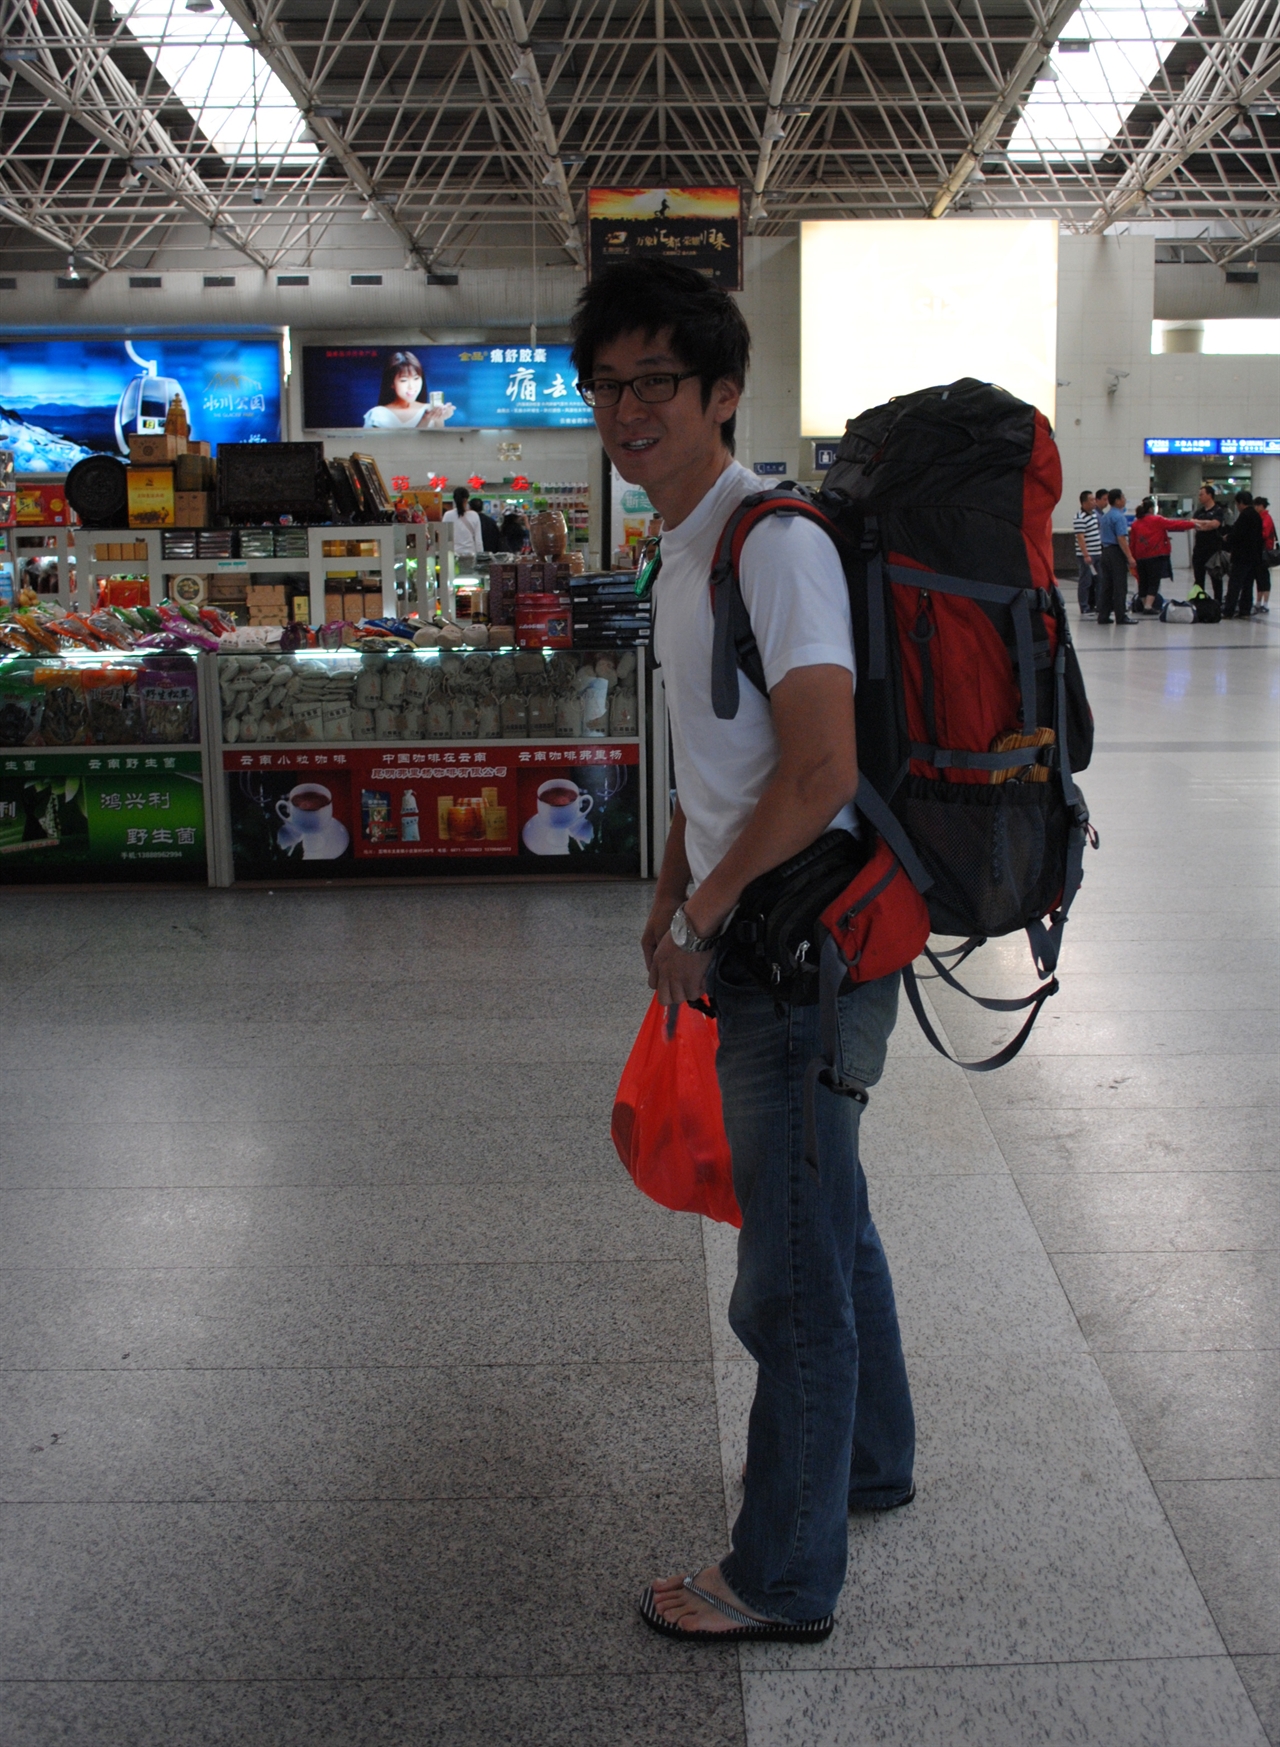 교환학생으로 중국에 간 원민씨는 열 달 만에 중국어 시험 HSK 고급을 땄다. 그 뒤로 5개월간 중국 곳곳을 여행했다.
